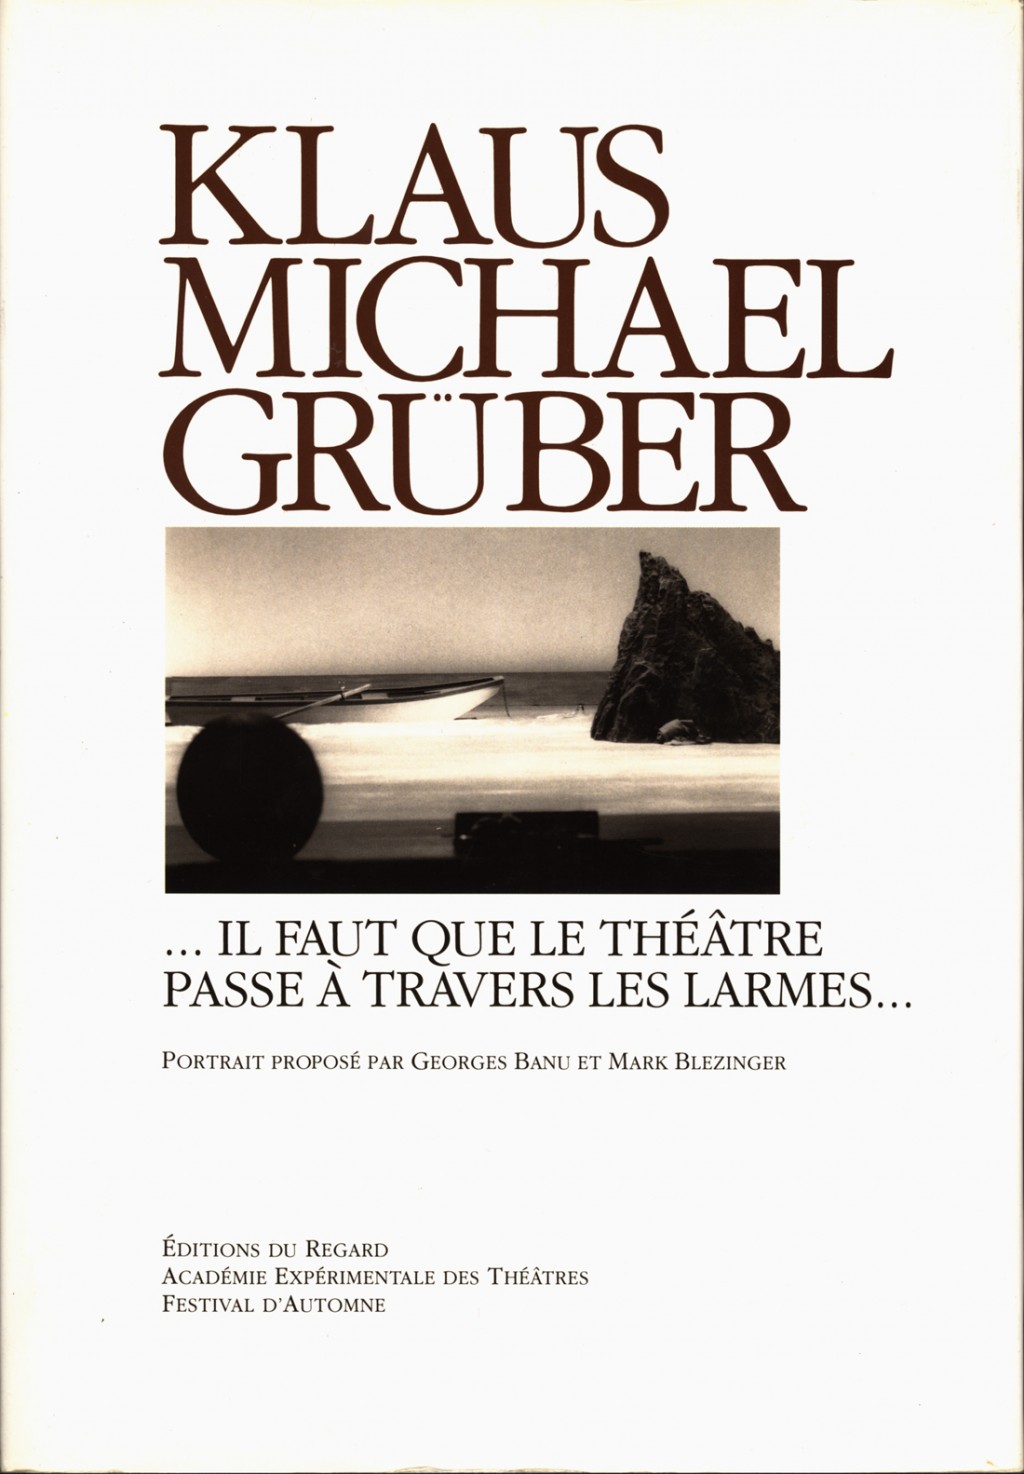 KLAUS MICHAEL GRÜBER - "il faut que le Théâtre passe à travers les larmes...”